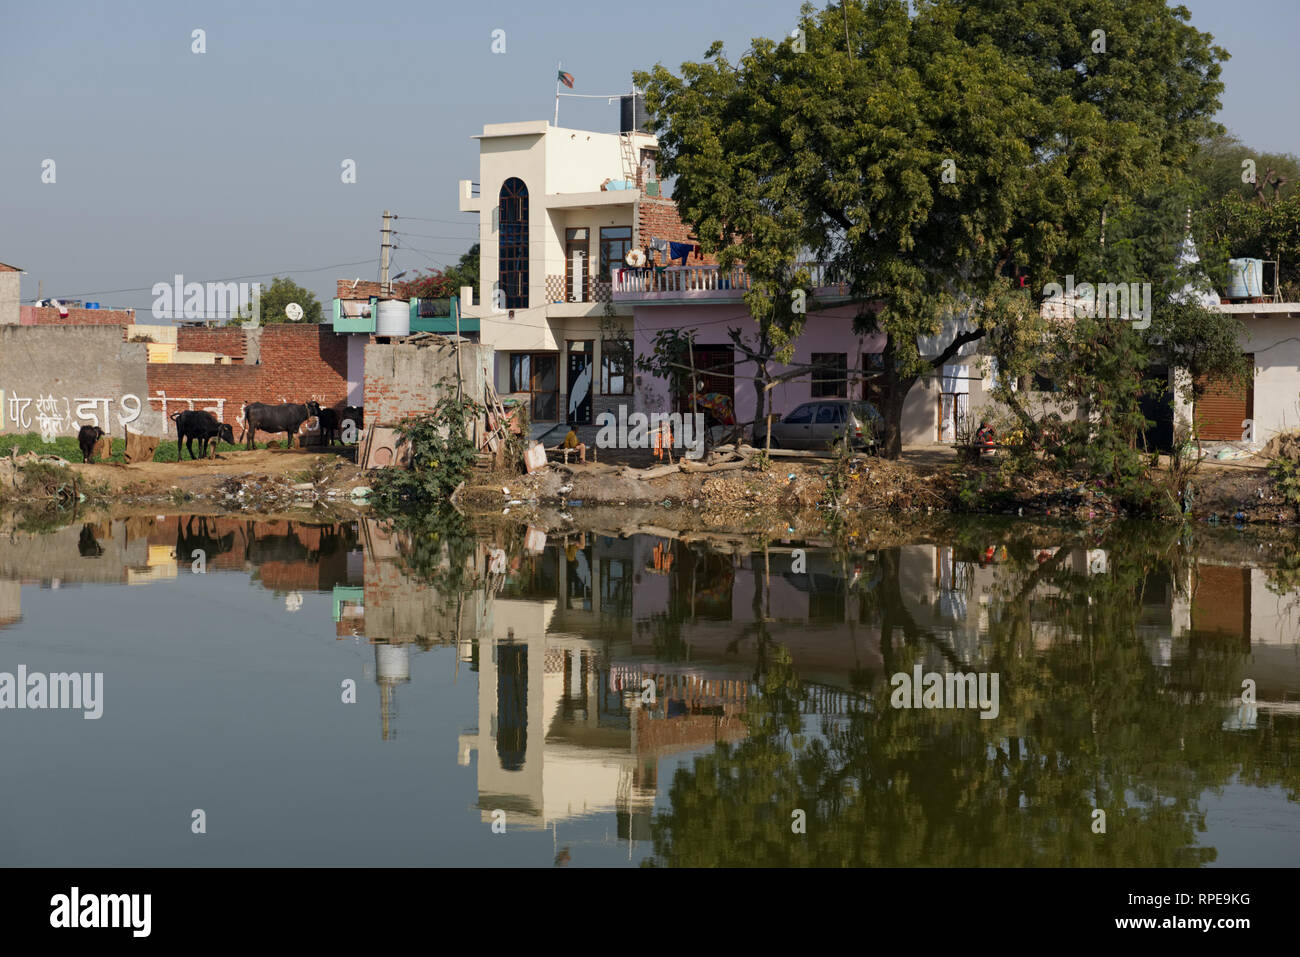 Ein ruhiges, abgelegenes Dorf in pulsierendes Rajasthan, zusammen mit seiner wirtschaftlich sinnvolle Vieh. Stockfoto